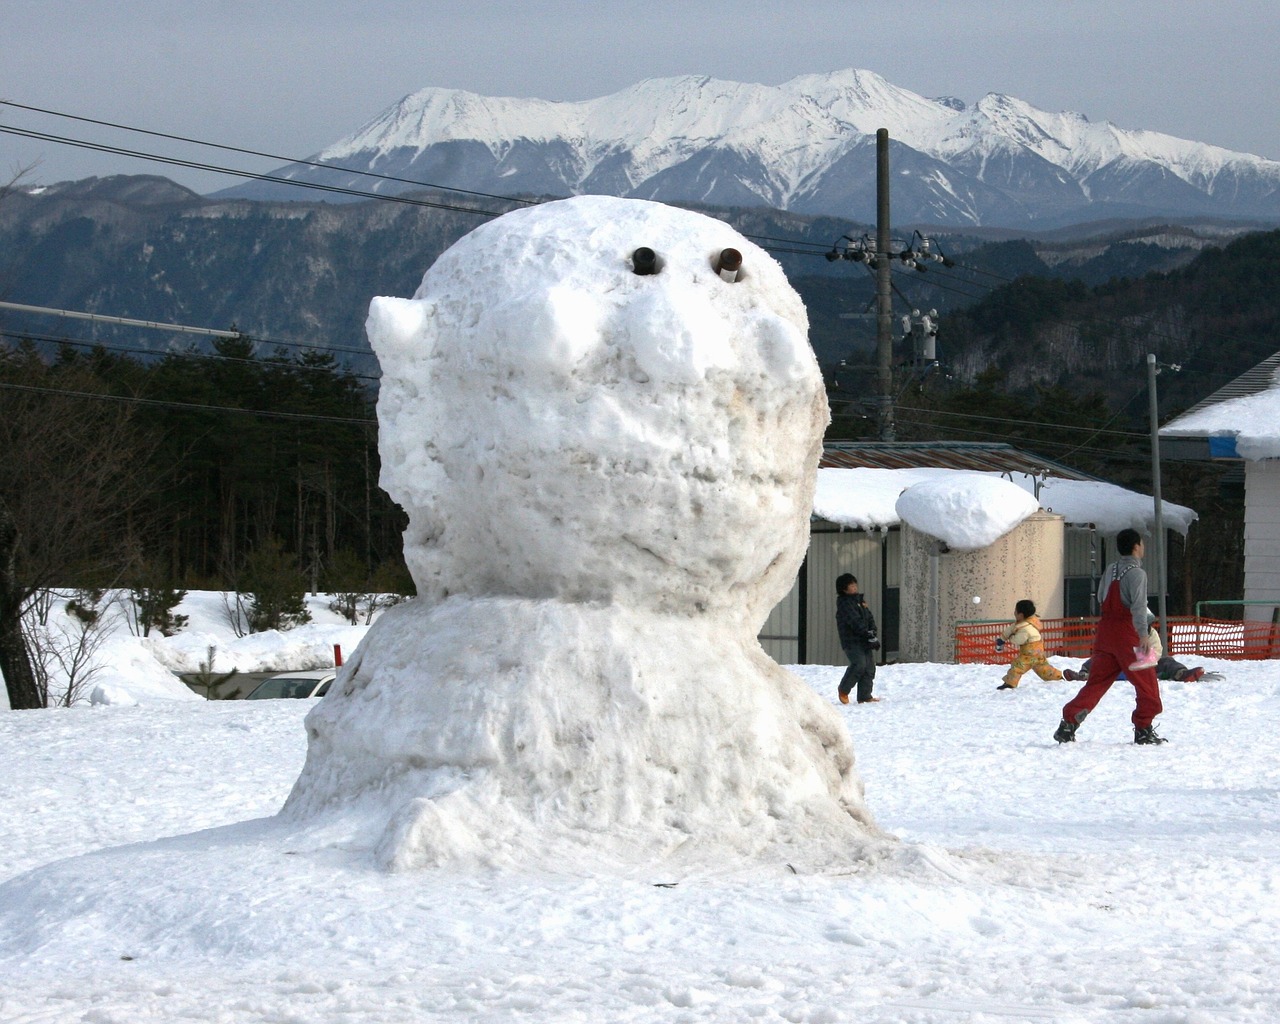 snowman snowball fight mount kurai free photo